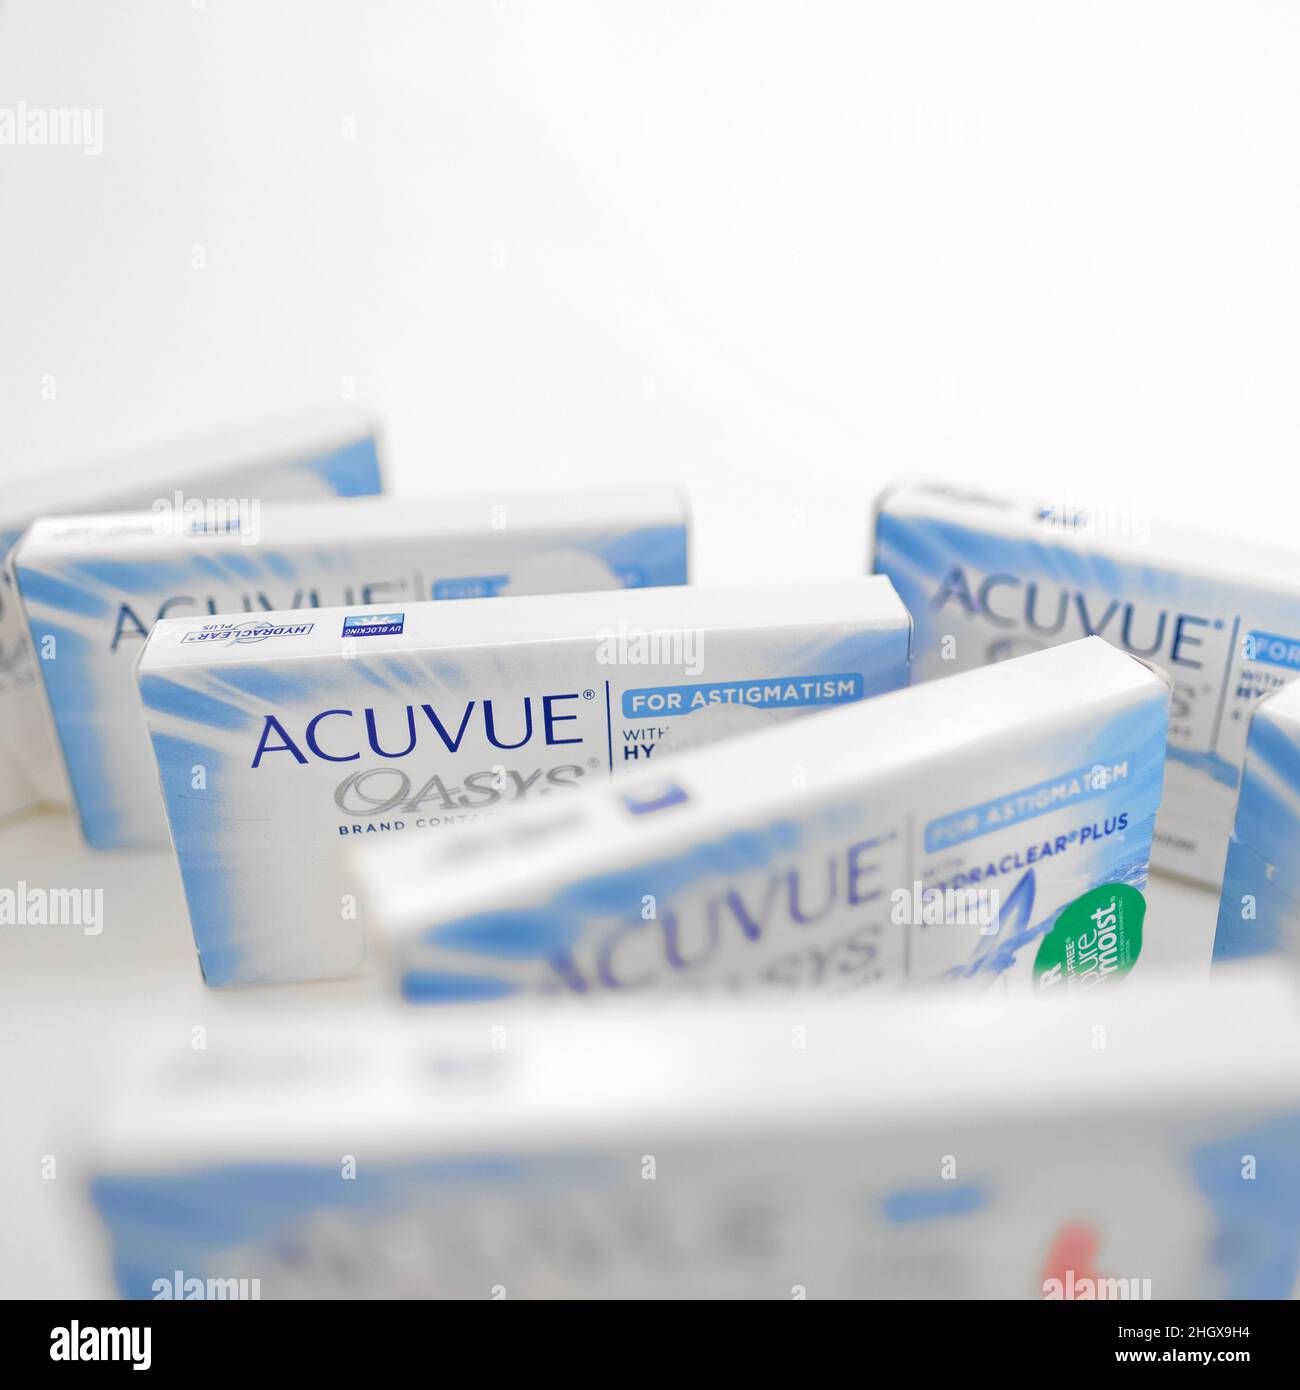 Boxen von Acuvue Oasys Marke Kontaktlinsen für Astigmatismus auf weißem  Hintergrund Stockfotografie - Alamy